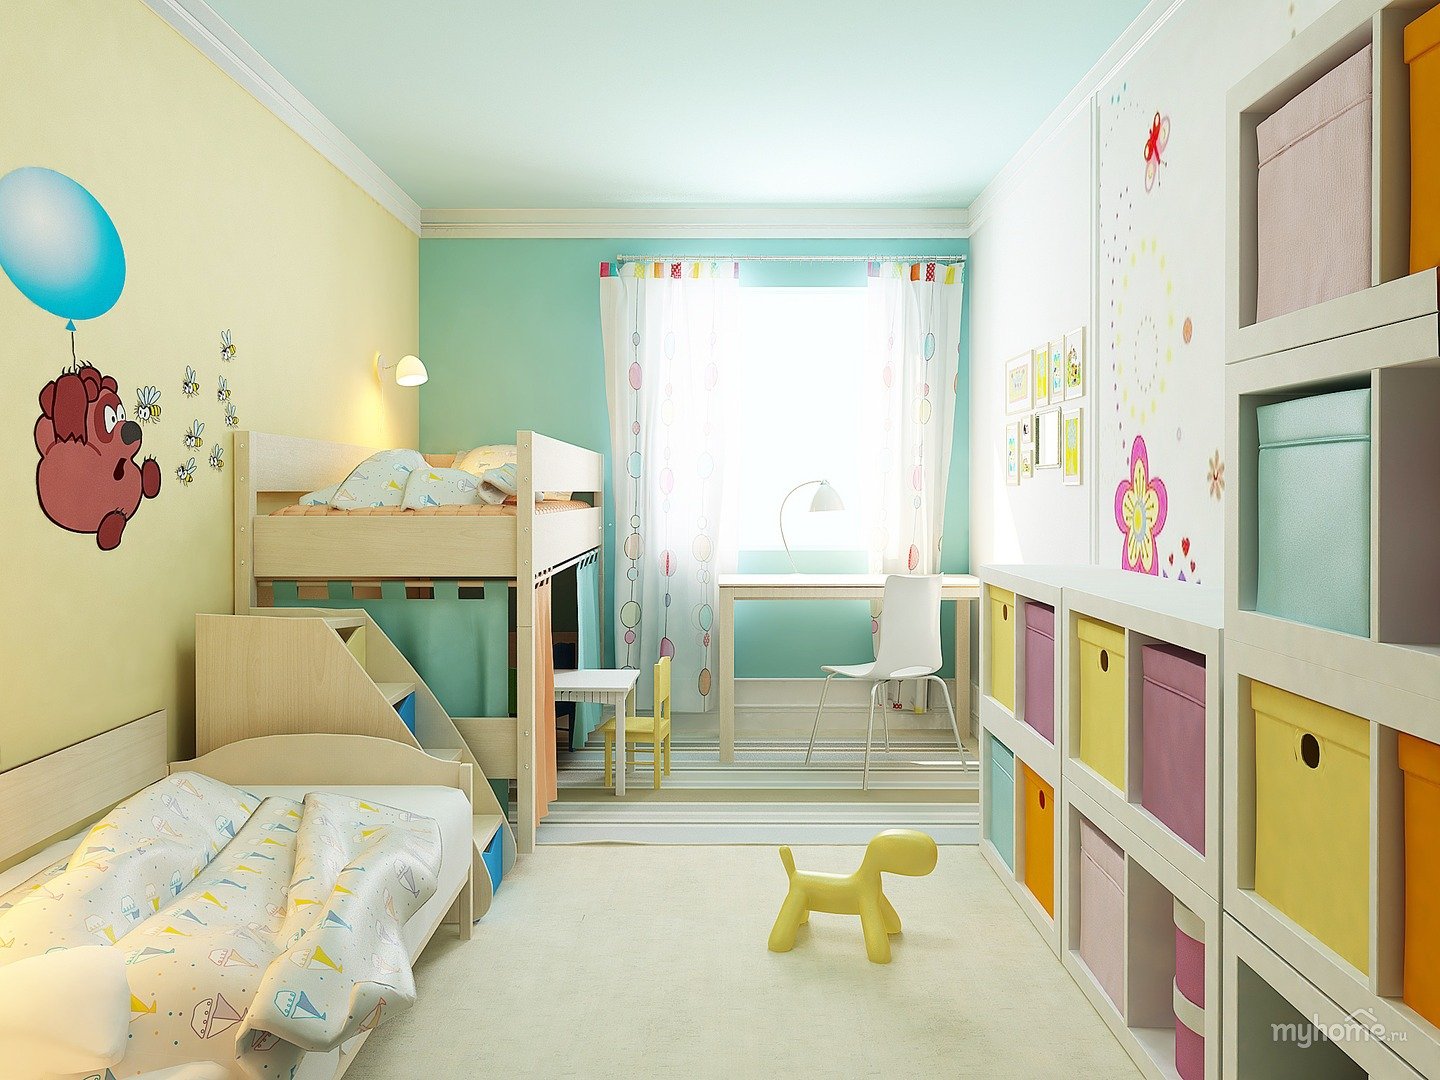 Комната молодой мамы. Детская комната для Дочки. Планировка комнаты для двоих детей. Комната мамы и ребенка. Детская для двух дочек.